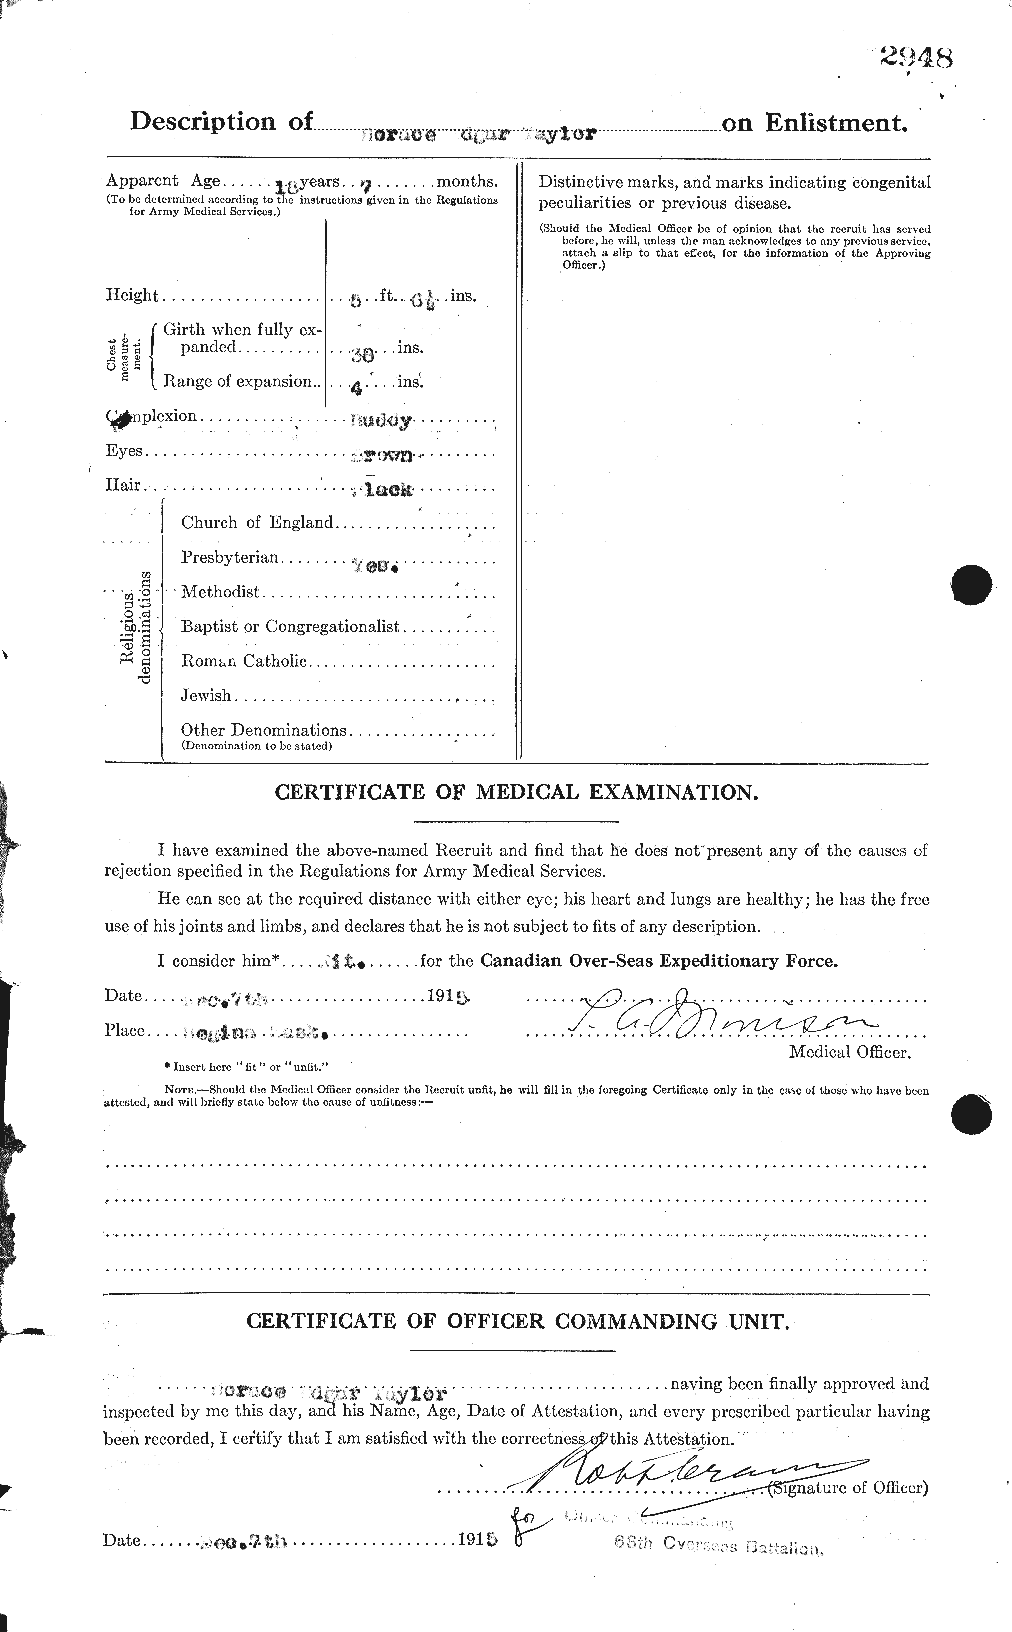 Dossiers du Personnel de la Première Guerre mondiale - CEC 626593b